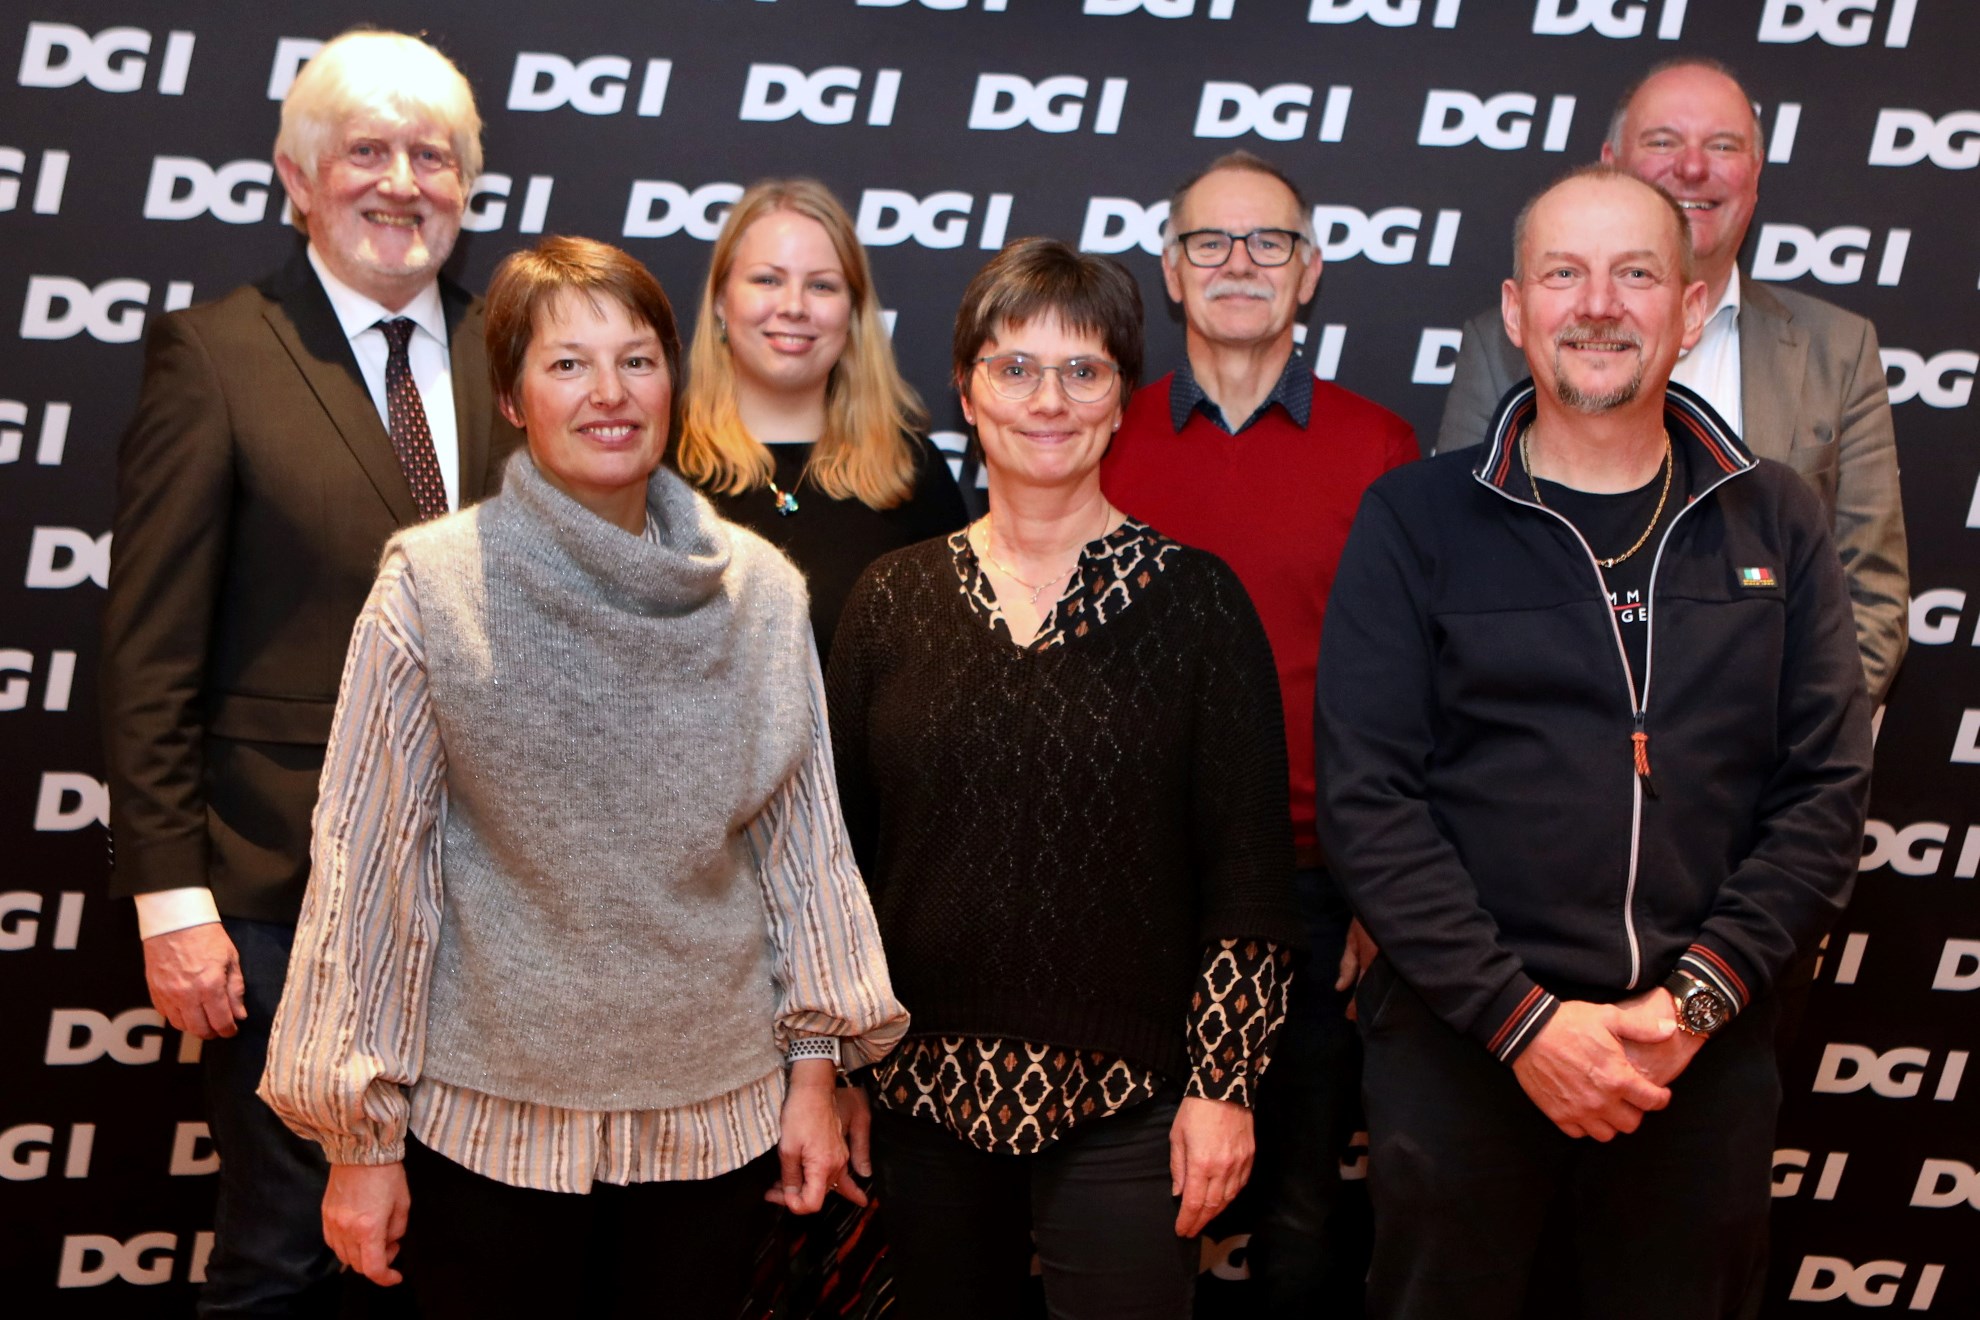 DGI Nordsjællands bestyrelse efter årsmøde 22